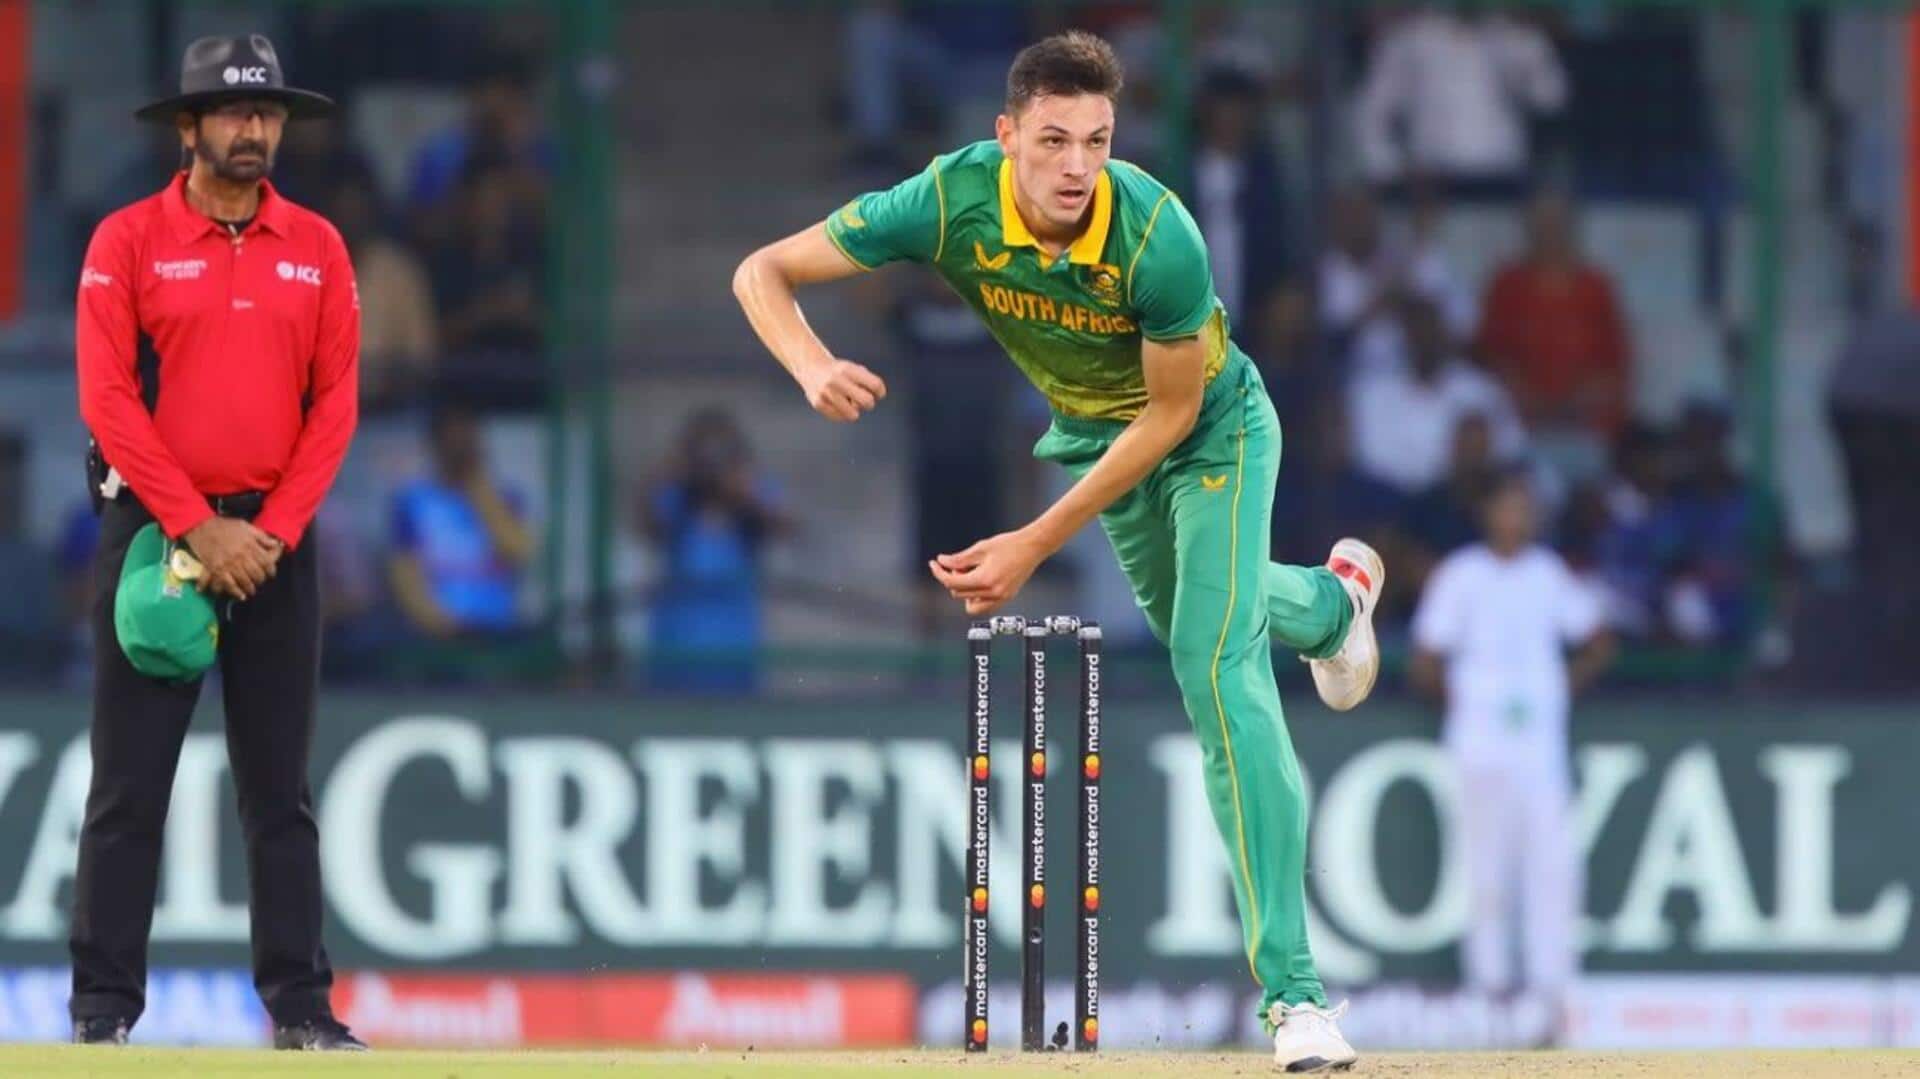 दक्षिण अफ्रीका बनाम वेस्टइंडीज: मार्को येंसन ने लिए 3 विकेट, किया अपना बेस्ट टी-20 अंतरराष्ट्रीय प्रदर्शन